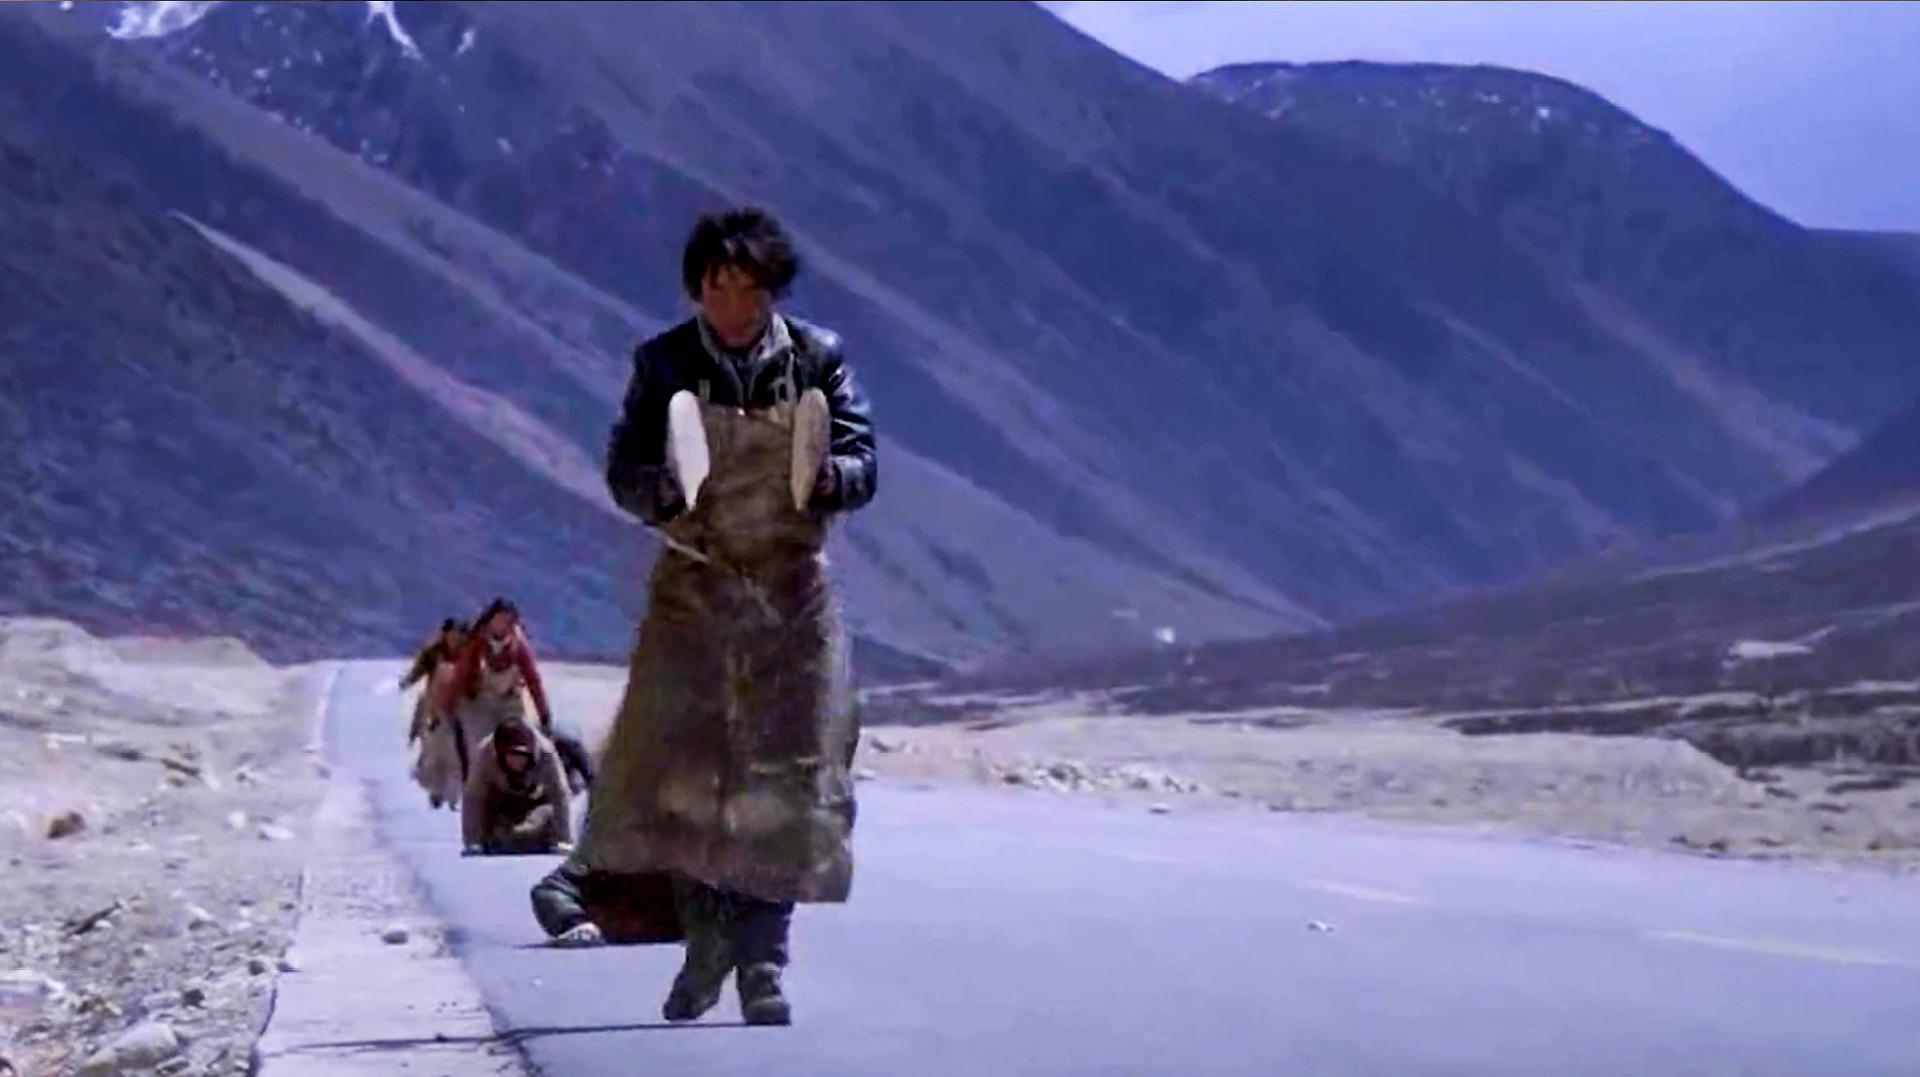 速看《冈仁波齐》:真实记录的西藏朝圣之路